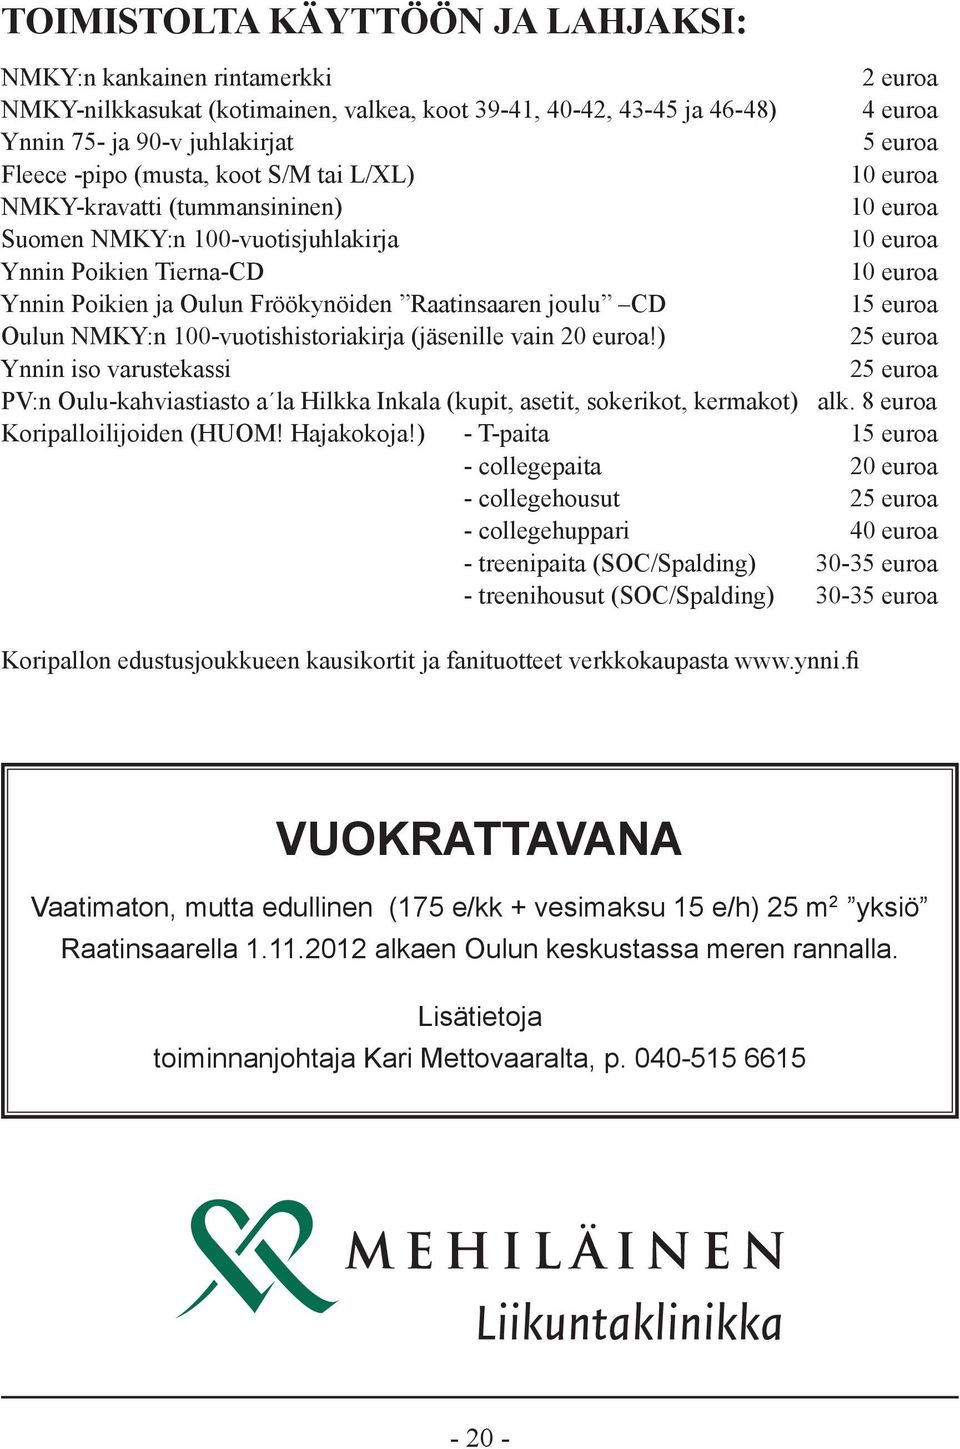 Raatinsaaren joulu CD 15 euroa Oulun NMKY:n 100-vuotishistoriakirja (jäsenille vain 20 euroa!